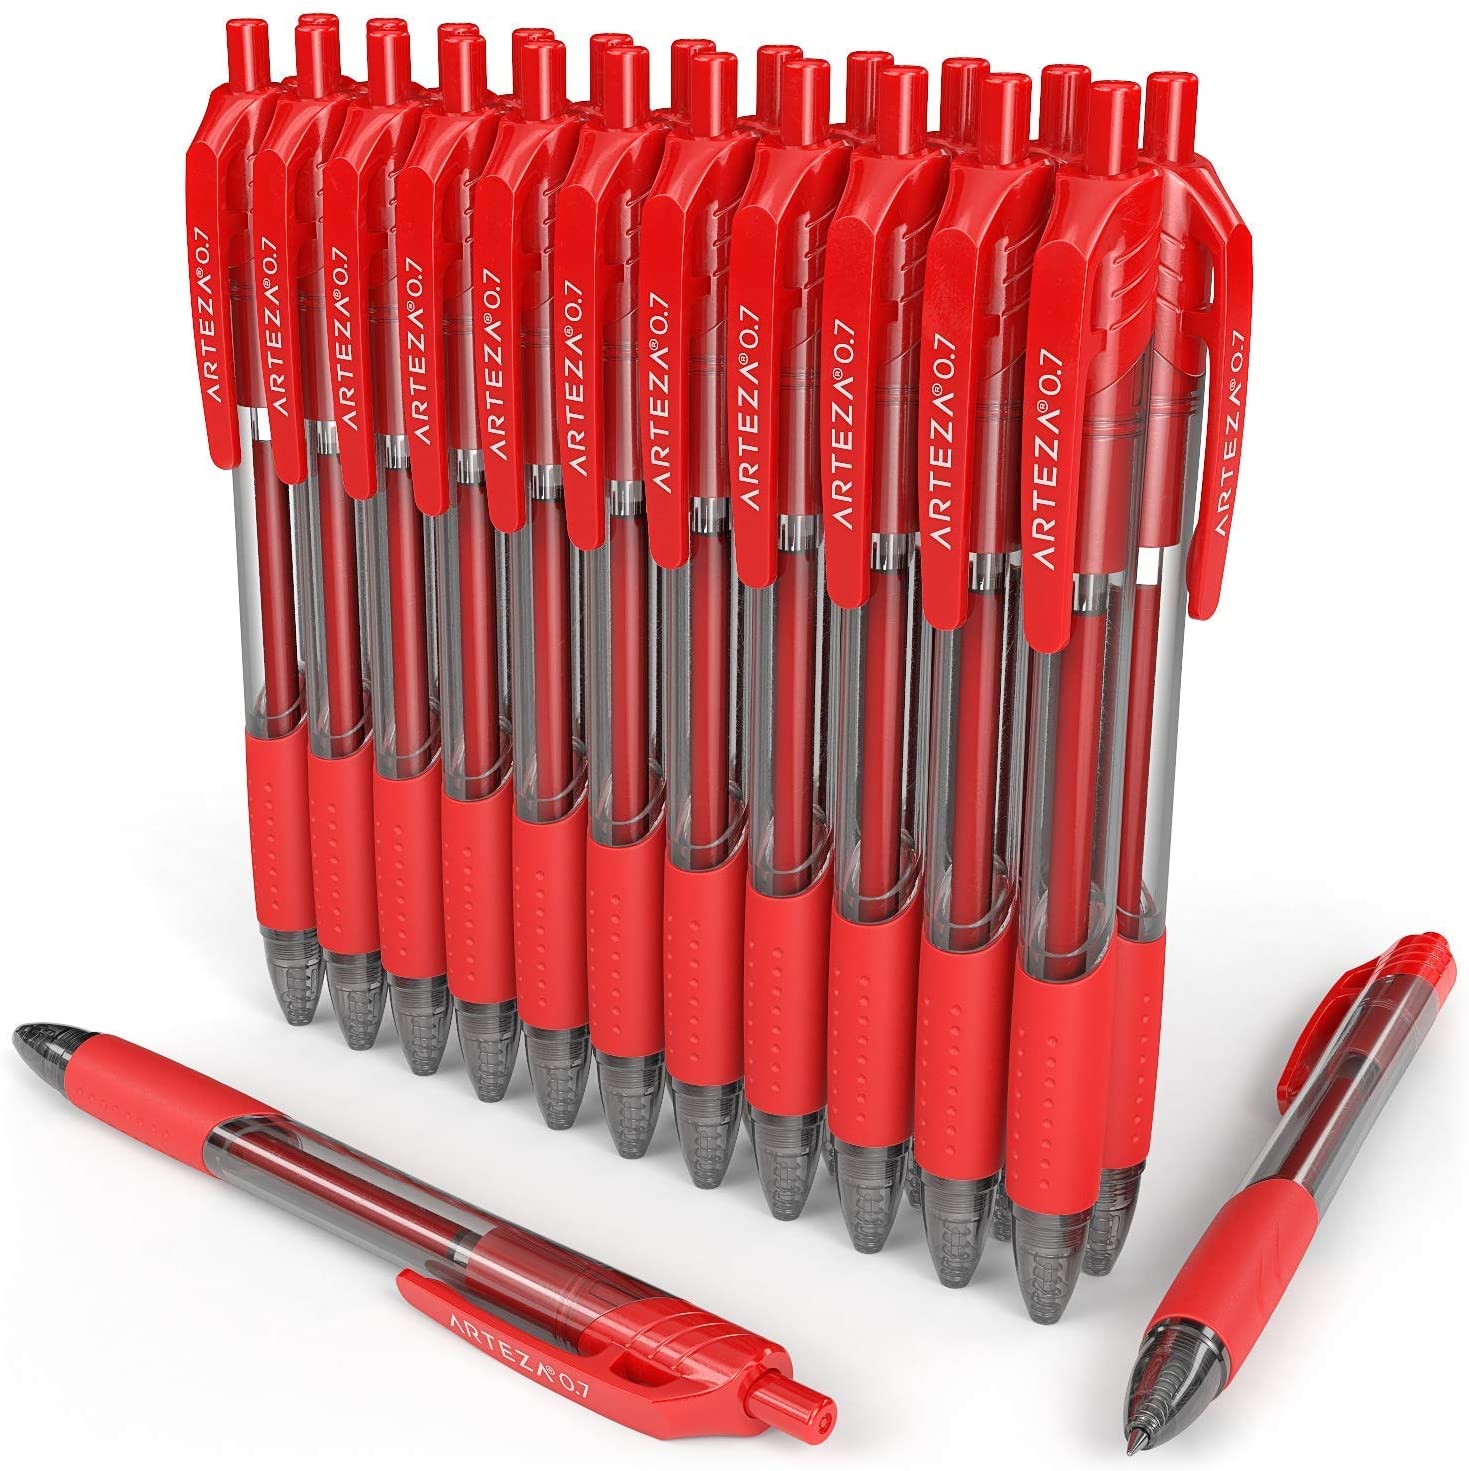 Arteza Retractable Gel Ink Pens Set, Red - Doodle, Draw, Journal